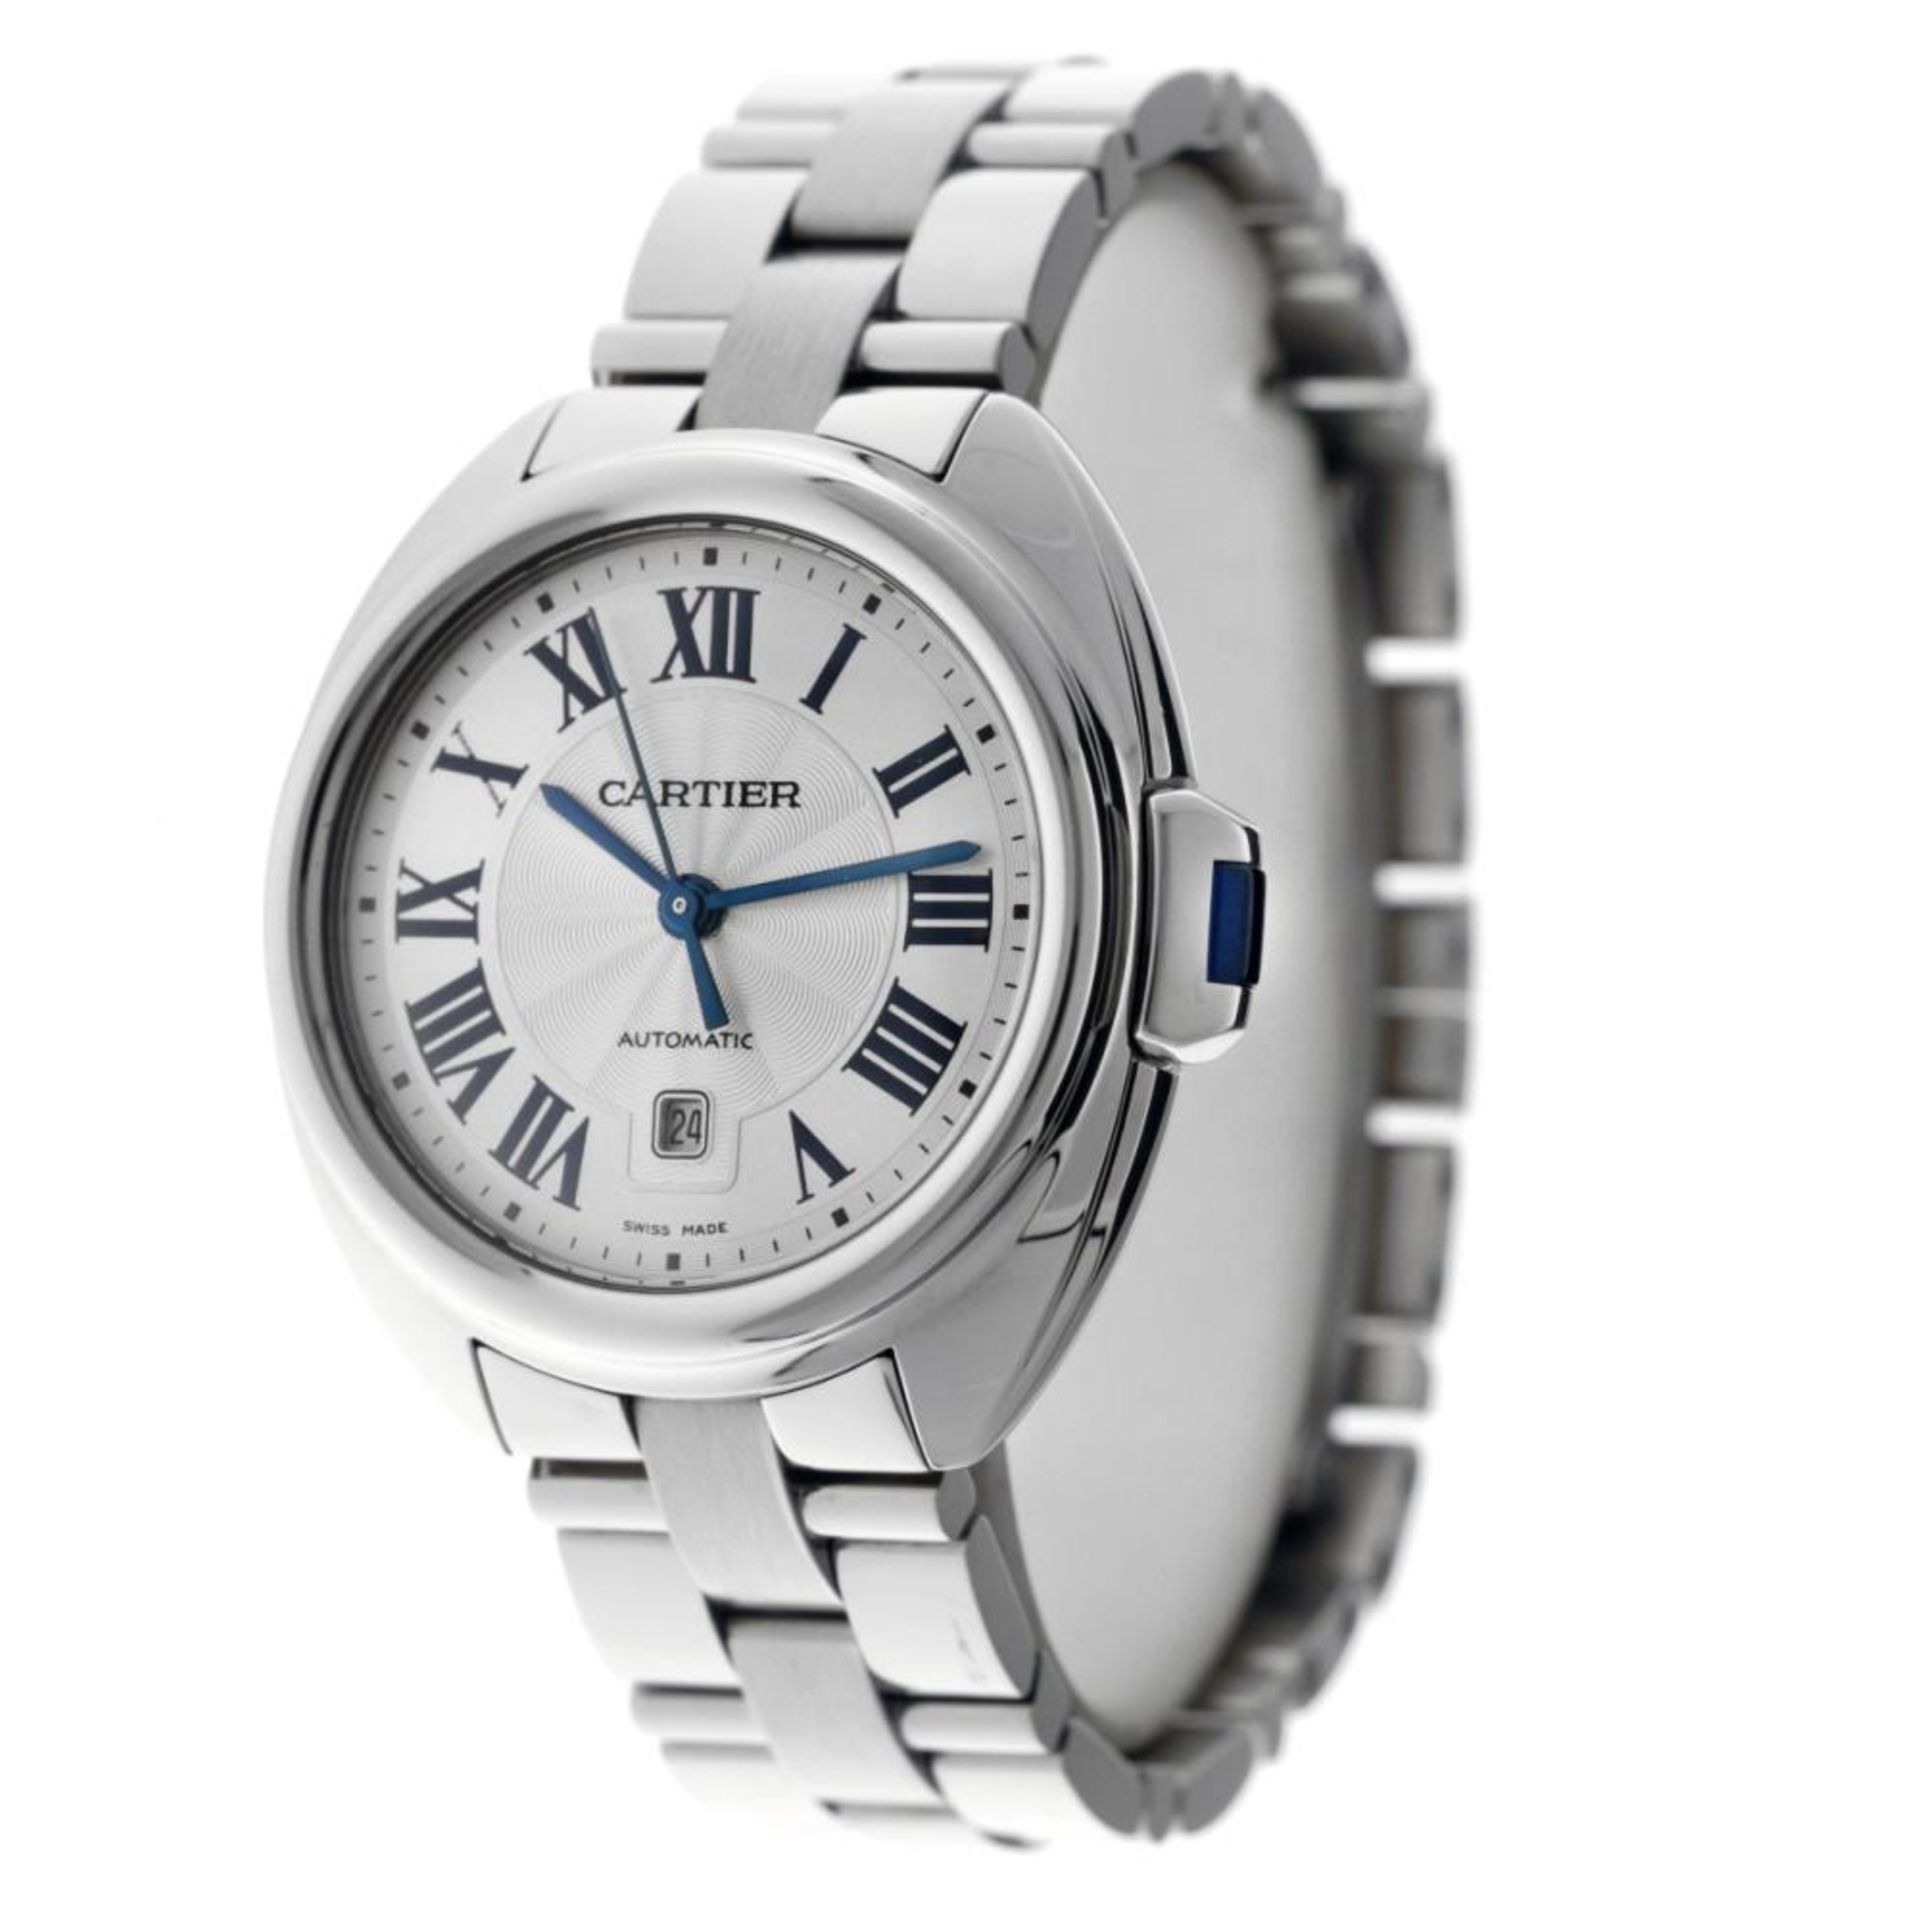 Cartier Clé WSCL0005 - Men's watch - 2020. - Image 3 of 12